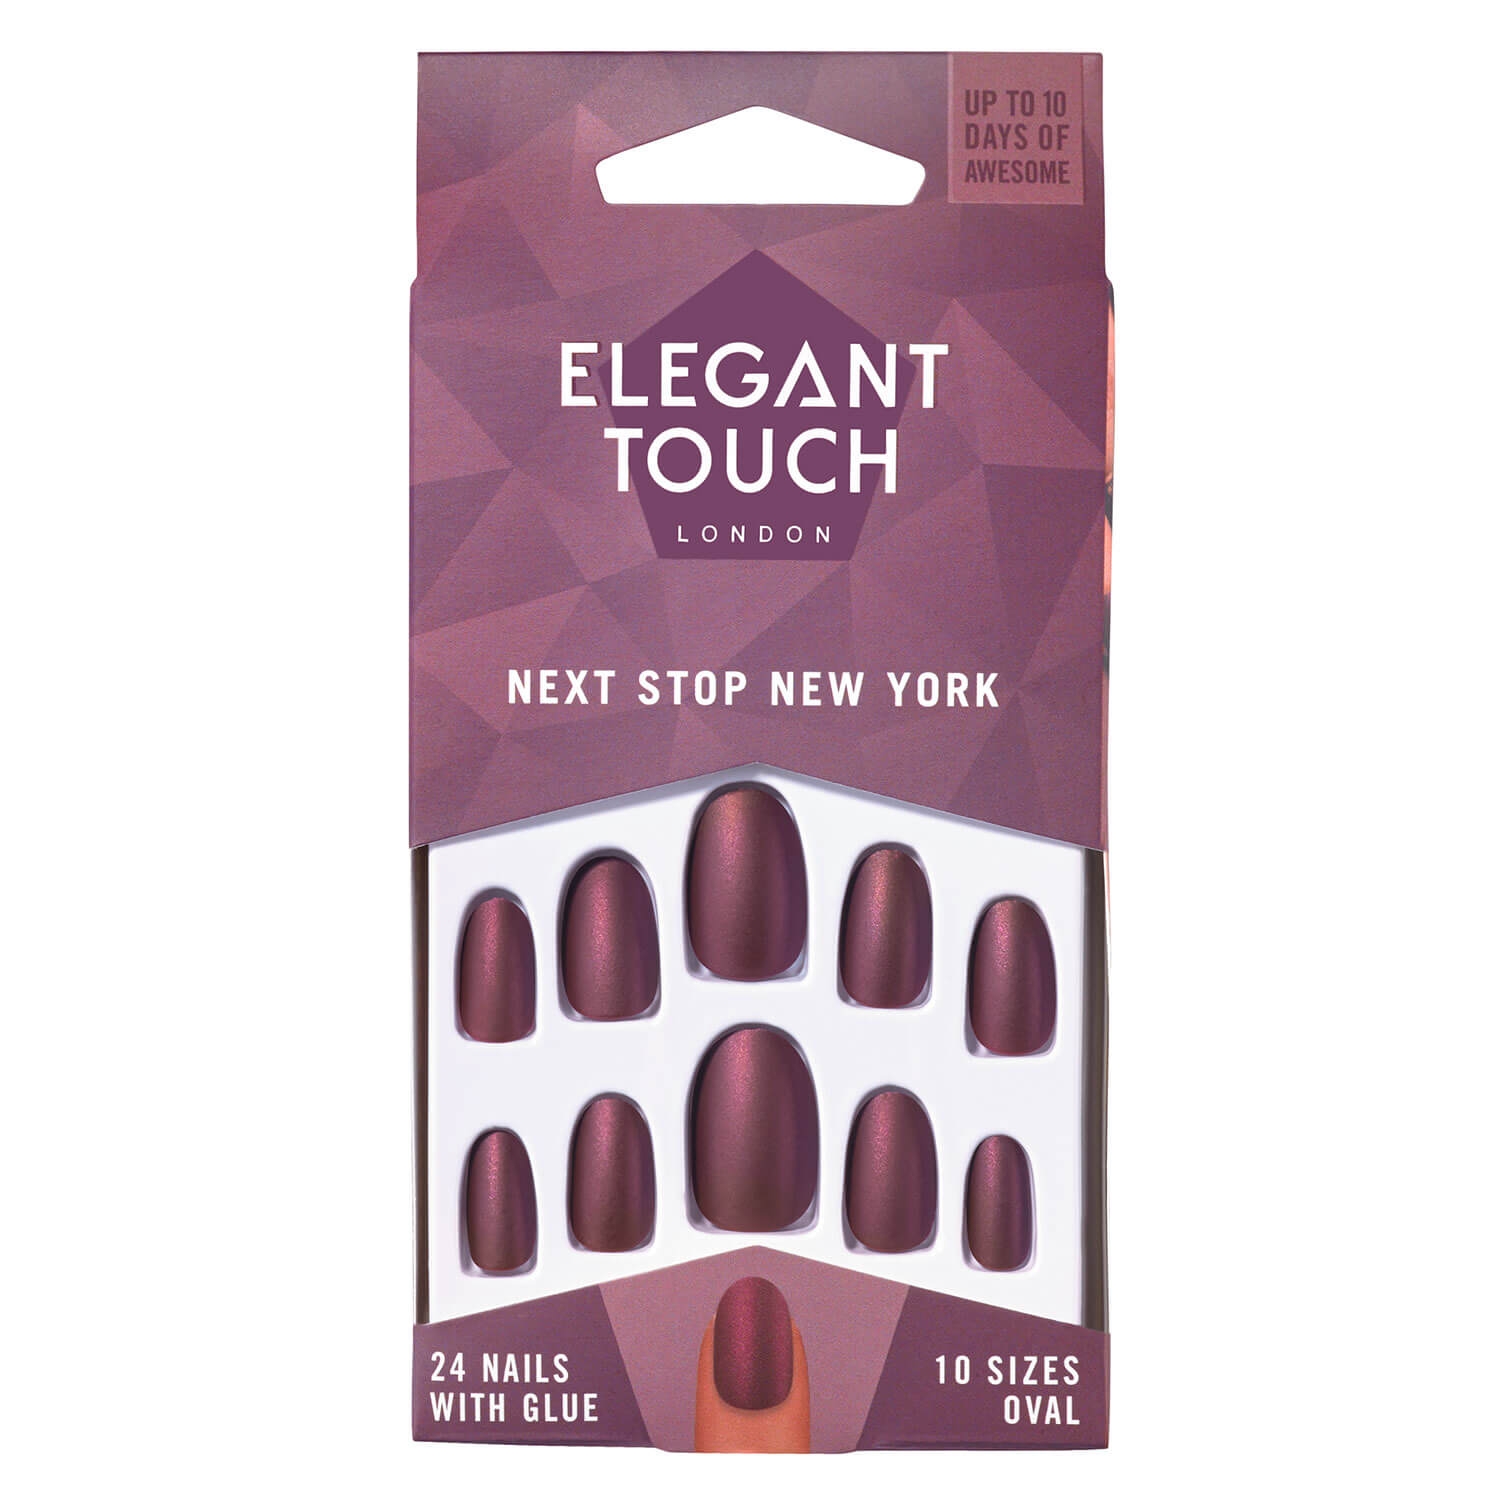 Produktbild von Elegant Touch - Next Stop New York